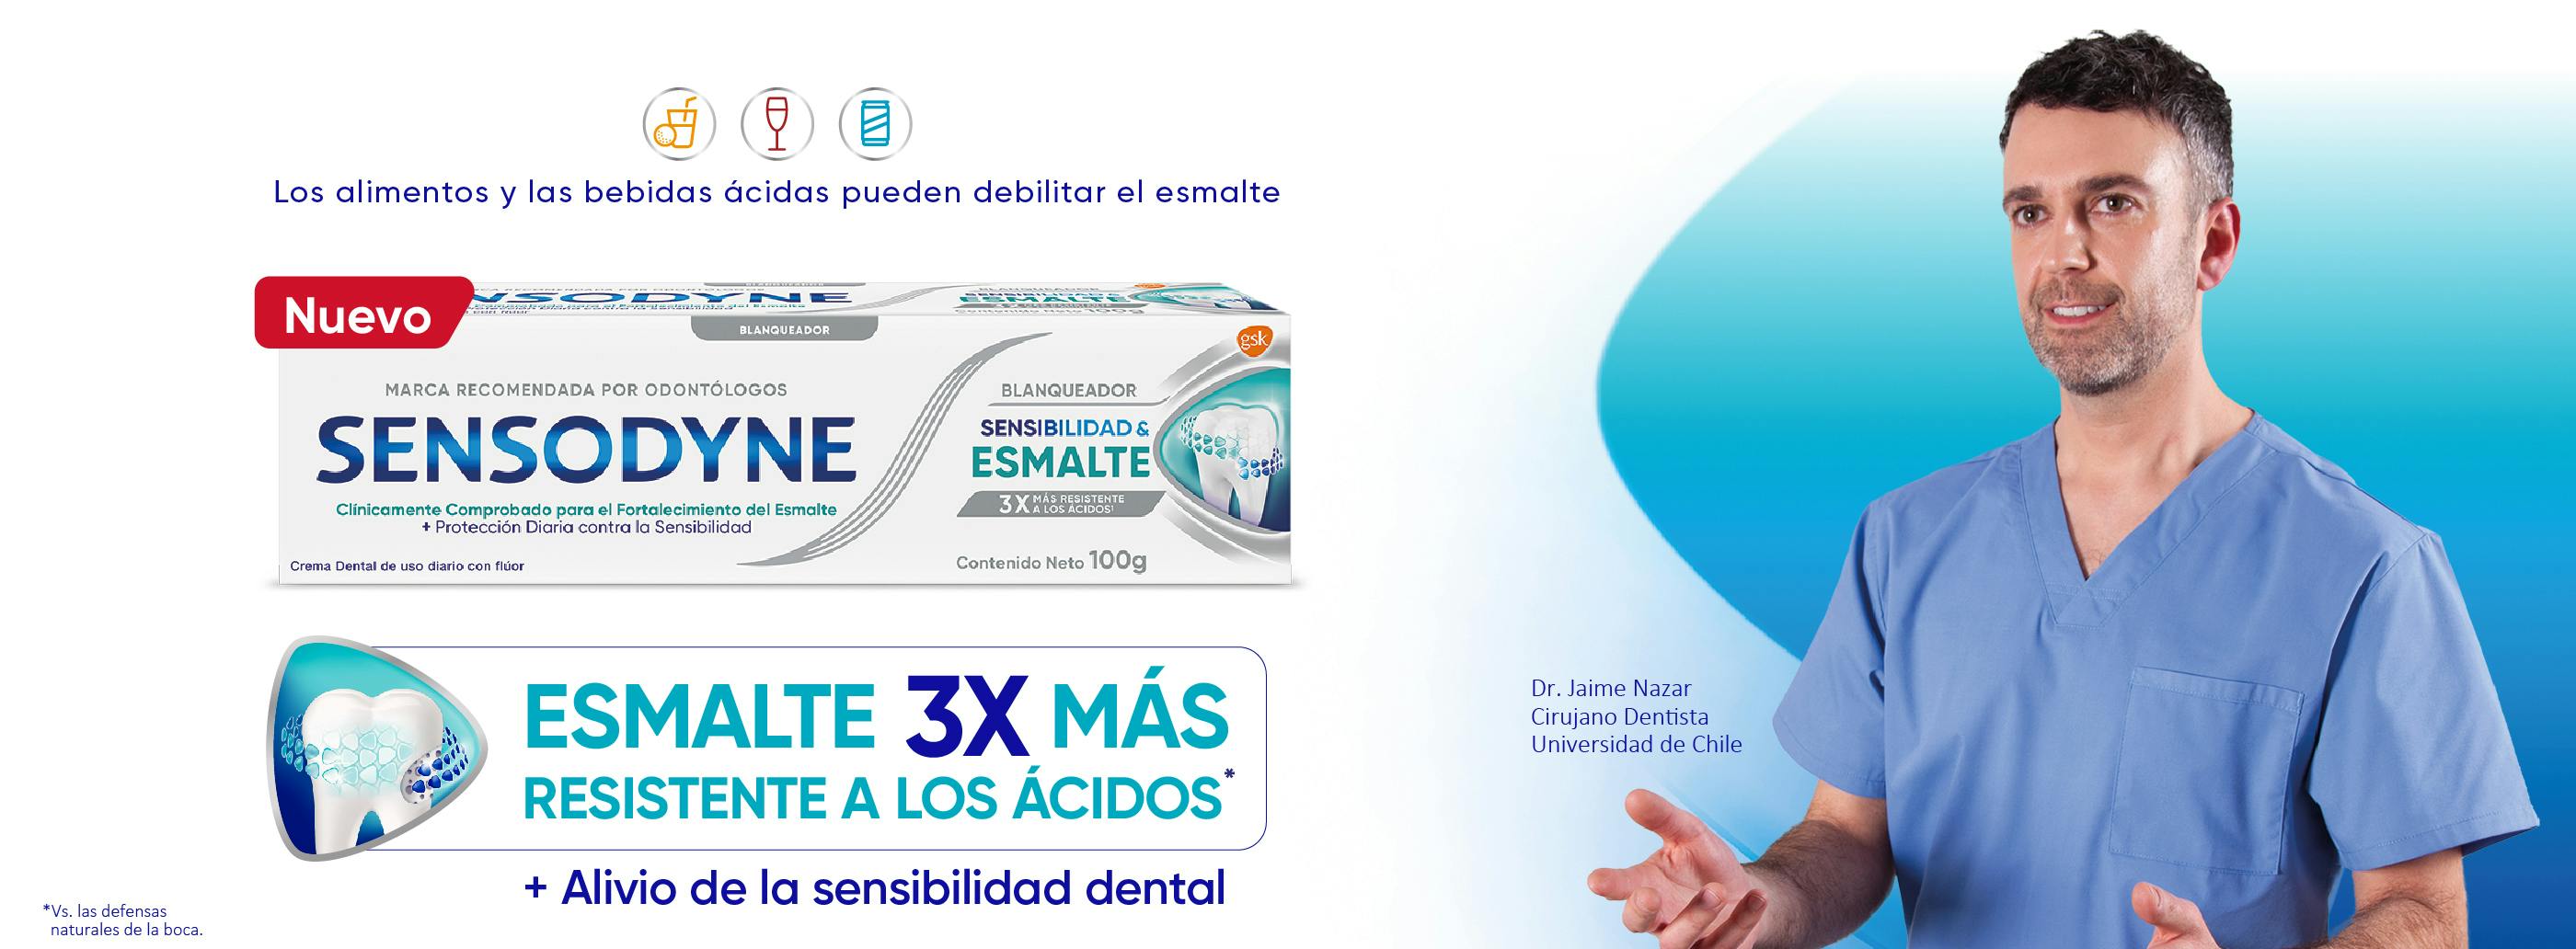 Crema dental Sensibilidad & Esmalte blanqueador